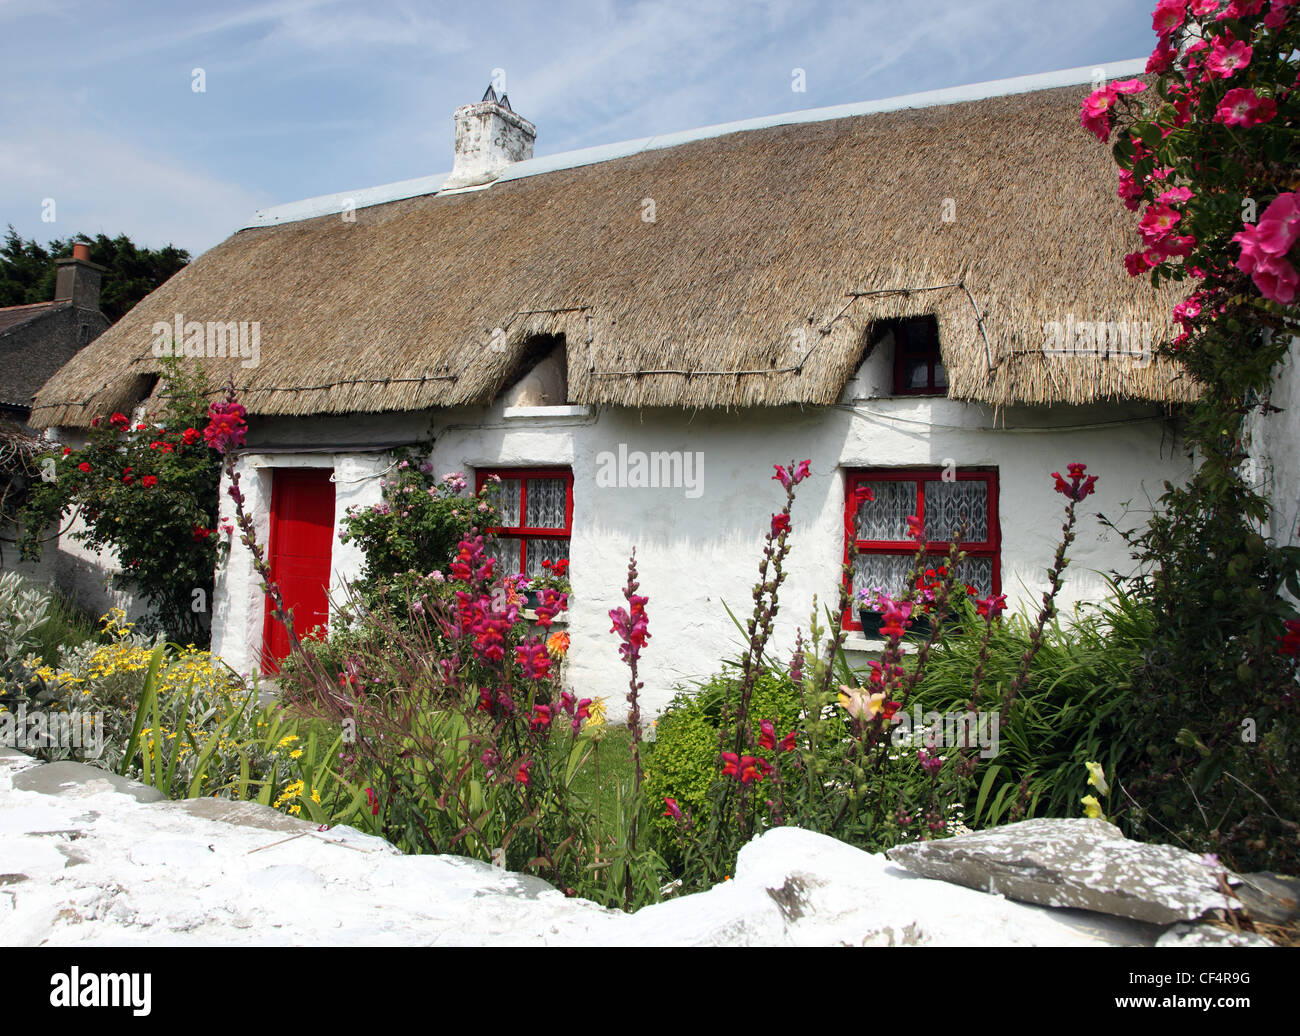 Chaumière à Clogherhead, un petit village de pêcheurs de la mer d'Irlande sur la péninsule, un Clogherhead National Heritage Area Banque D'Images